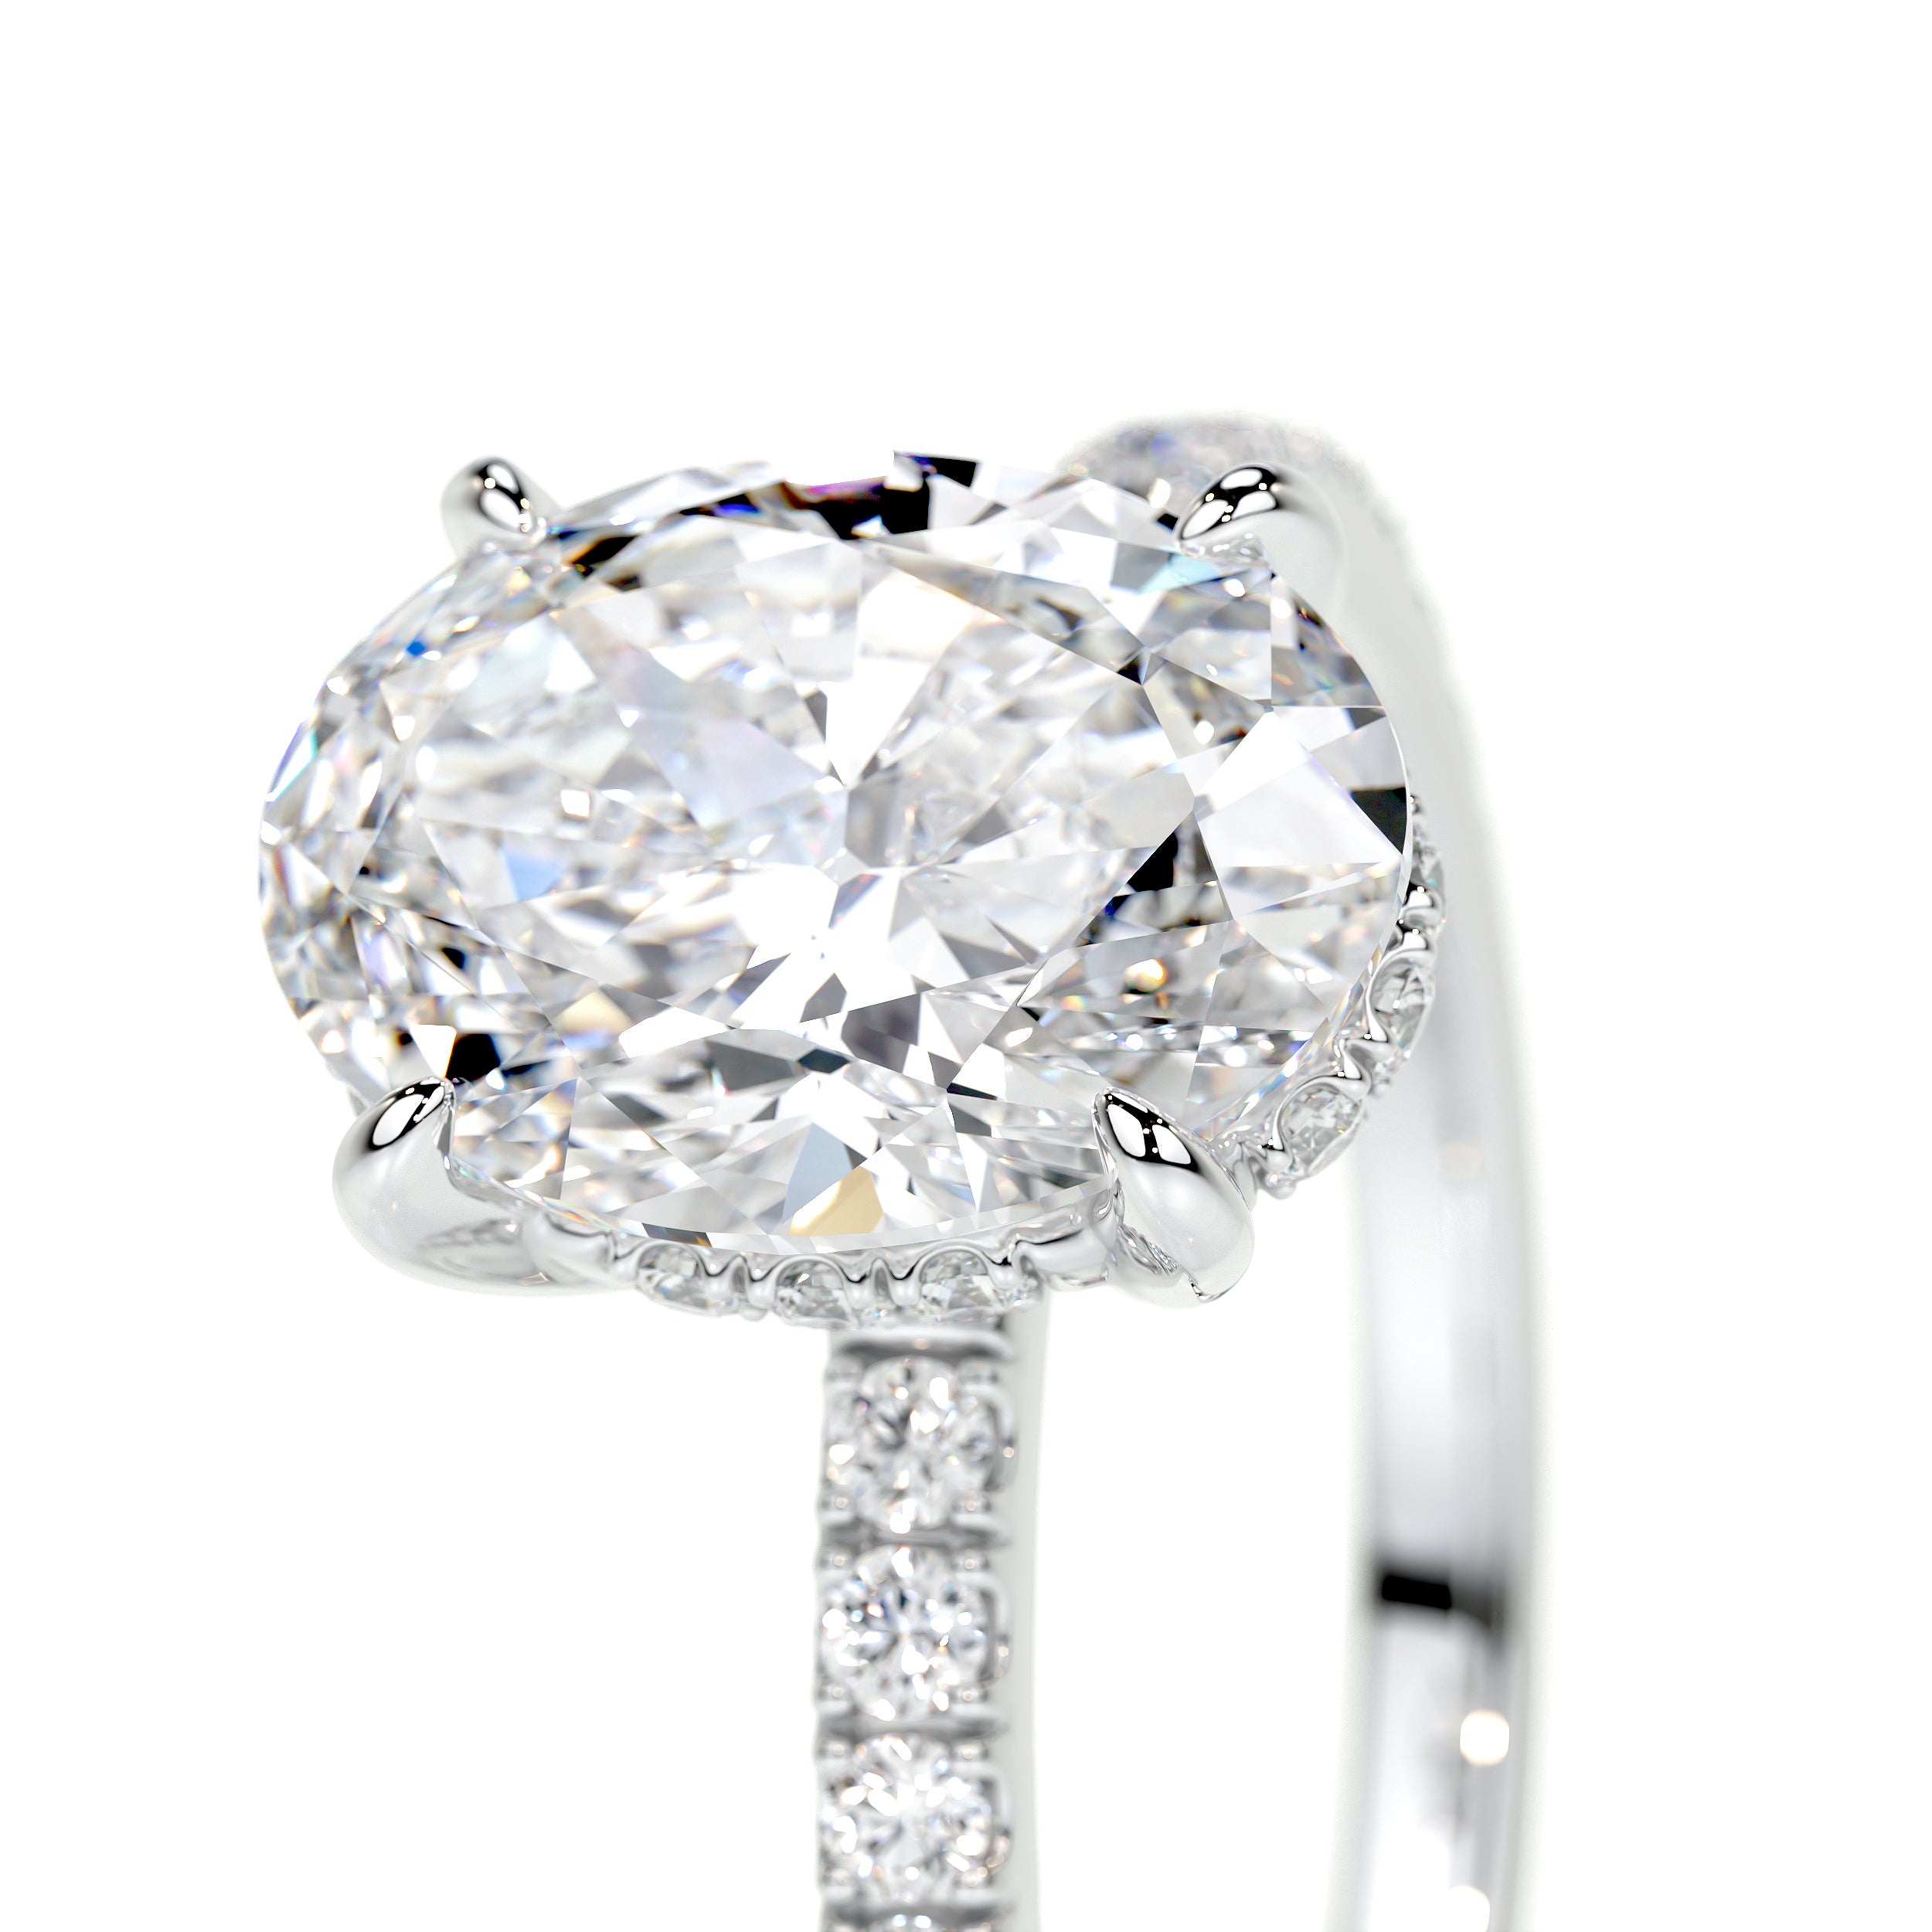 Lucy Lab Grown Diamond Ring   (2 Carat) -14K White Gold